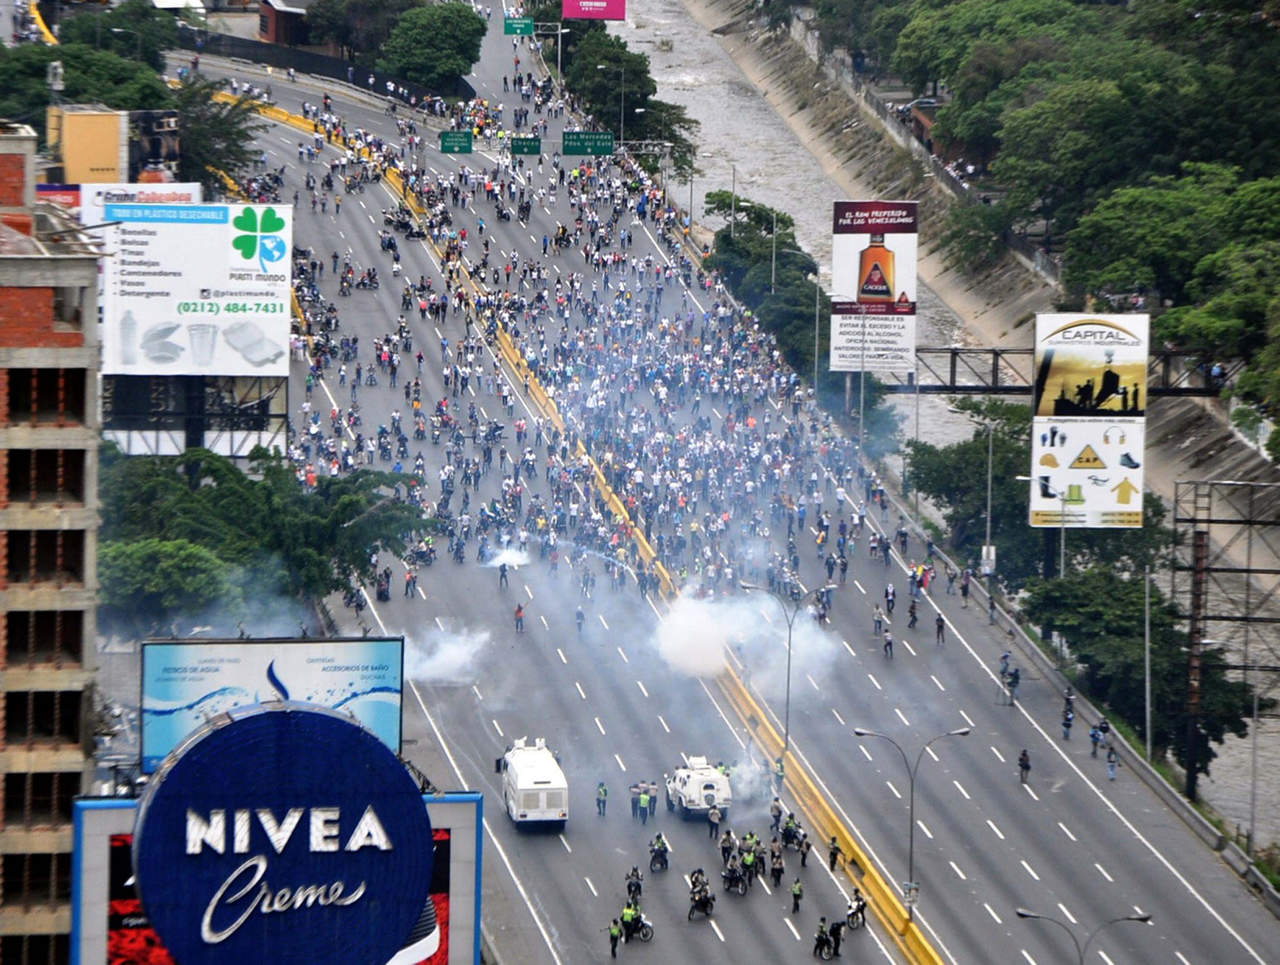 De acuerdo con un comunicado, indicaron que es urgente que las autoridades venezolanas adopten medidas para asegurar los derechos fundamentales y preservar la paz social. (NOTIMEX)